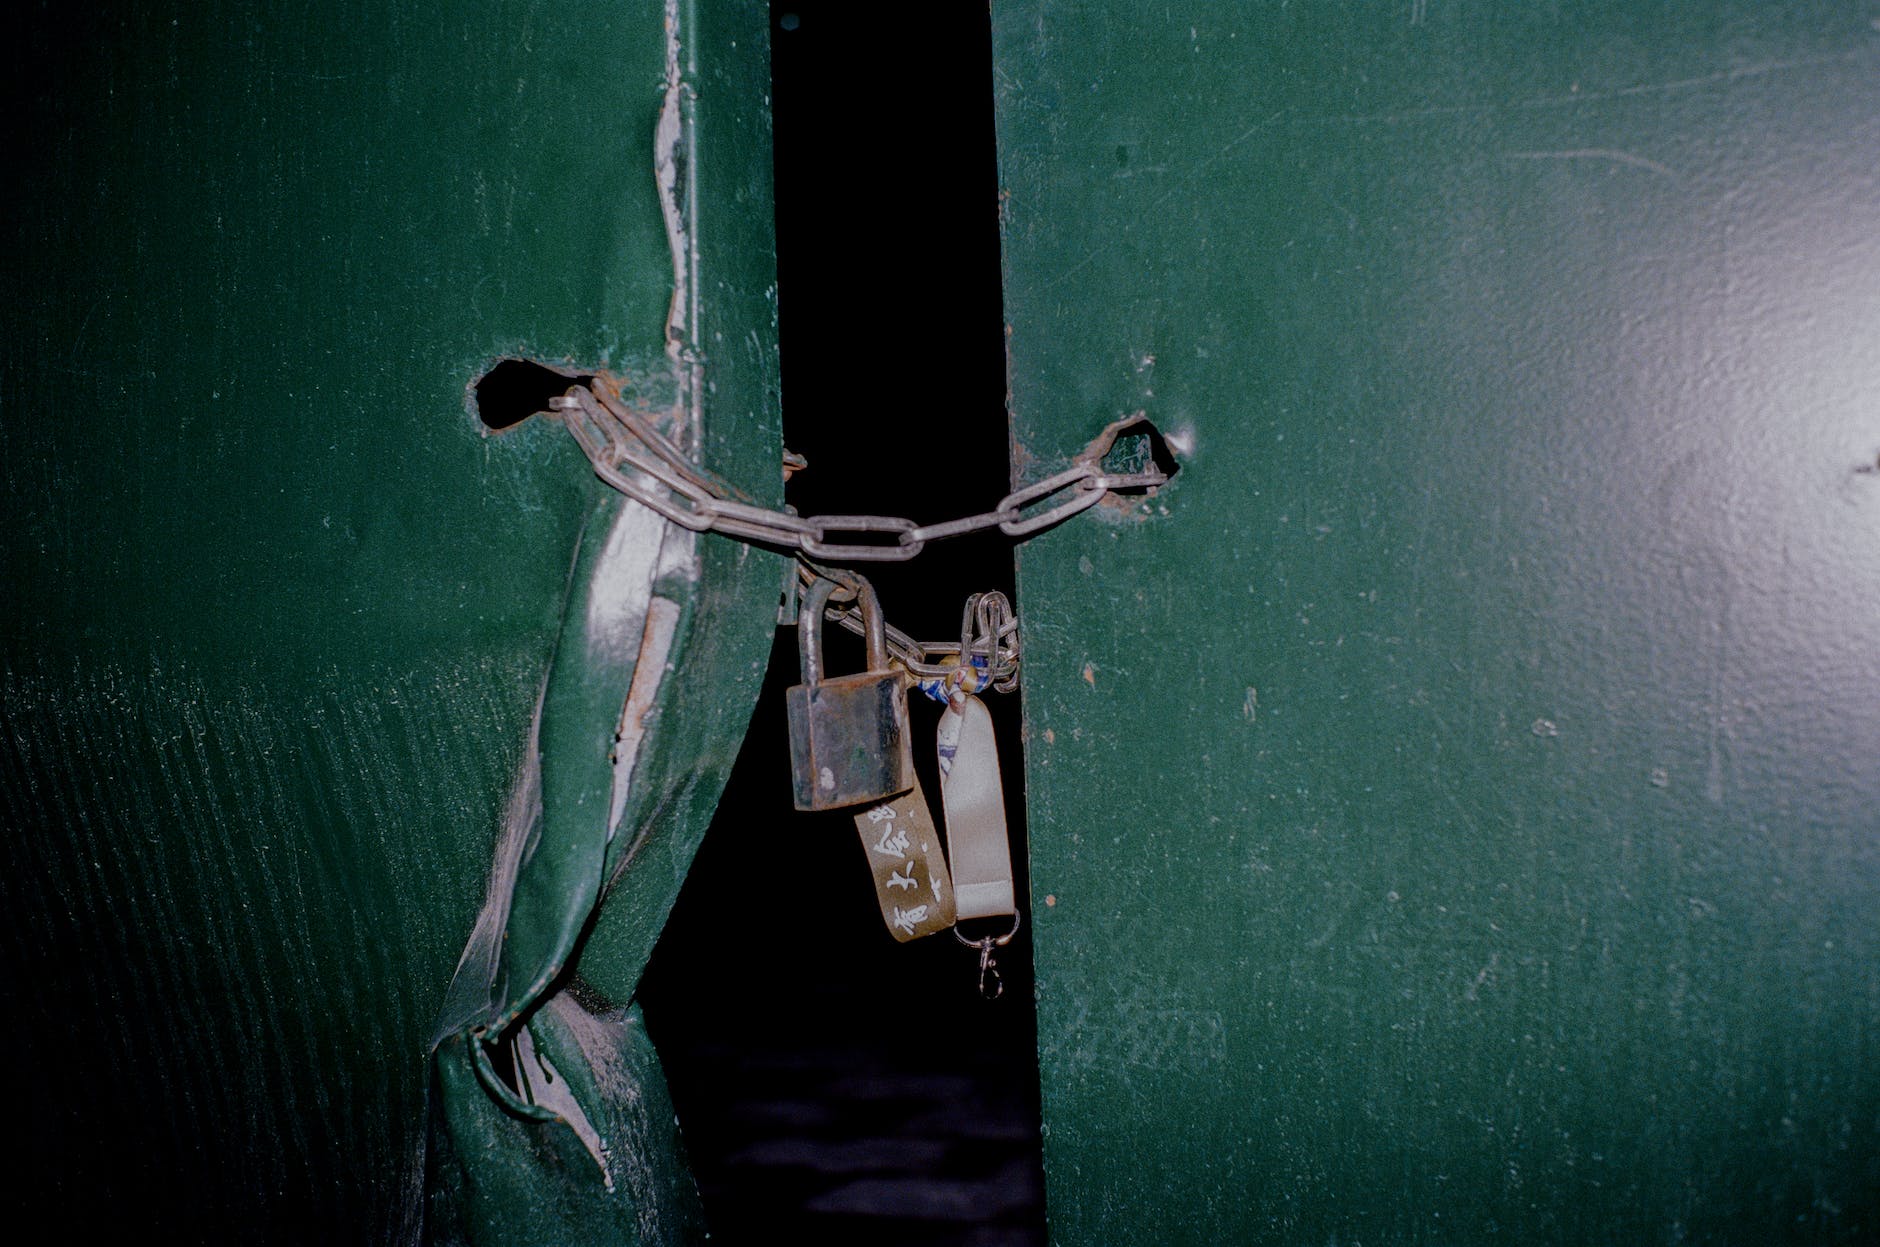 padlock on chain closing the metal door